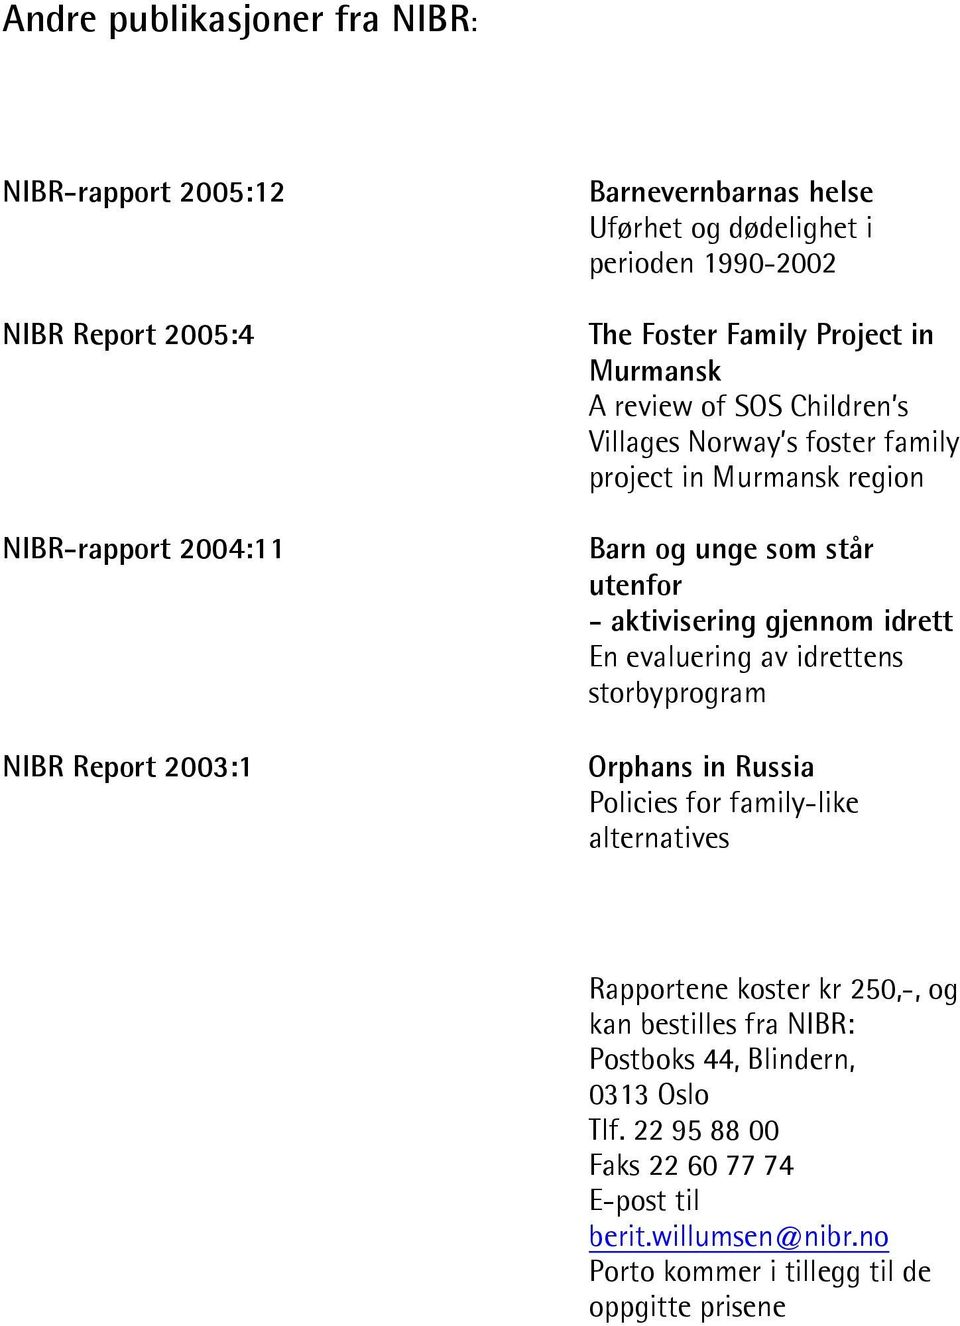 - aktivisering gjennom idrett En evaluering av idrettens storbyprogram Orphans in Russia Policies for family-like alternatives Rapportene koster kr 250,-, og kan